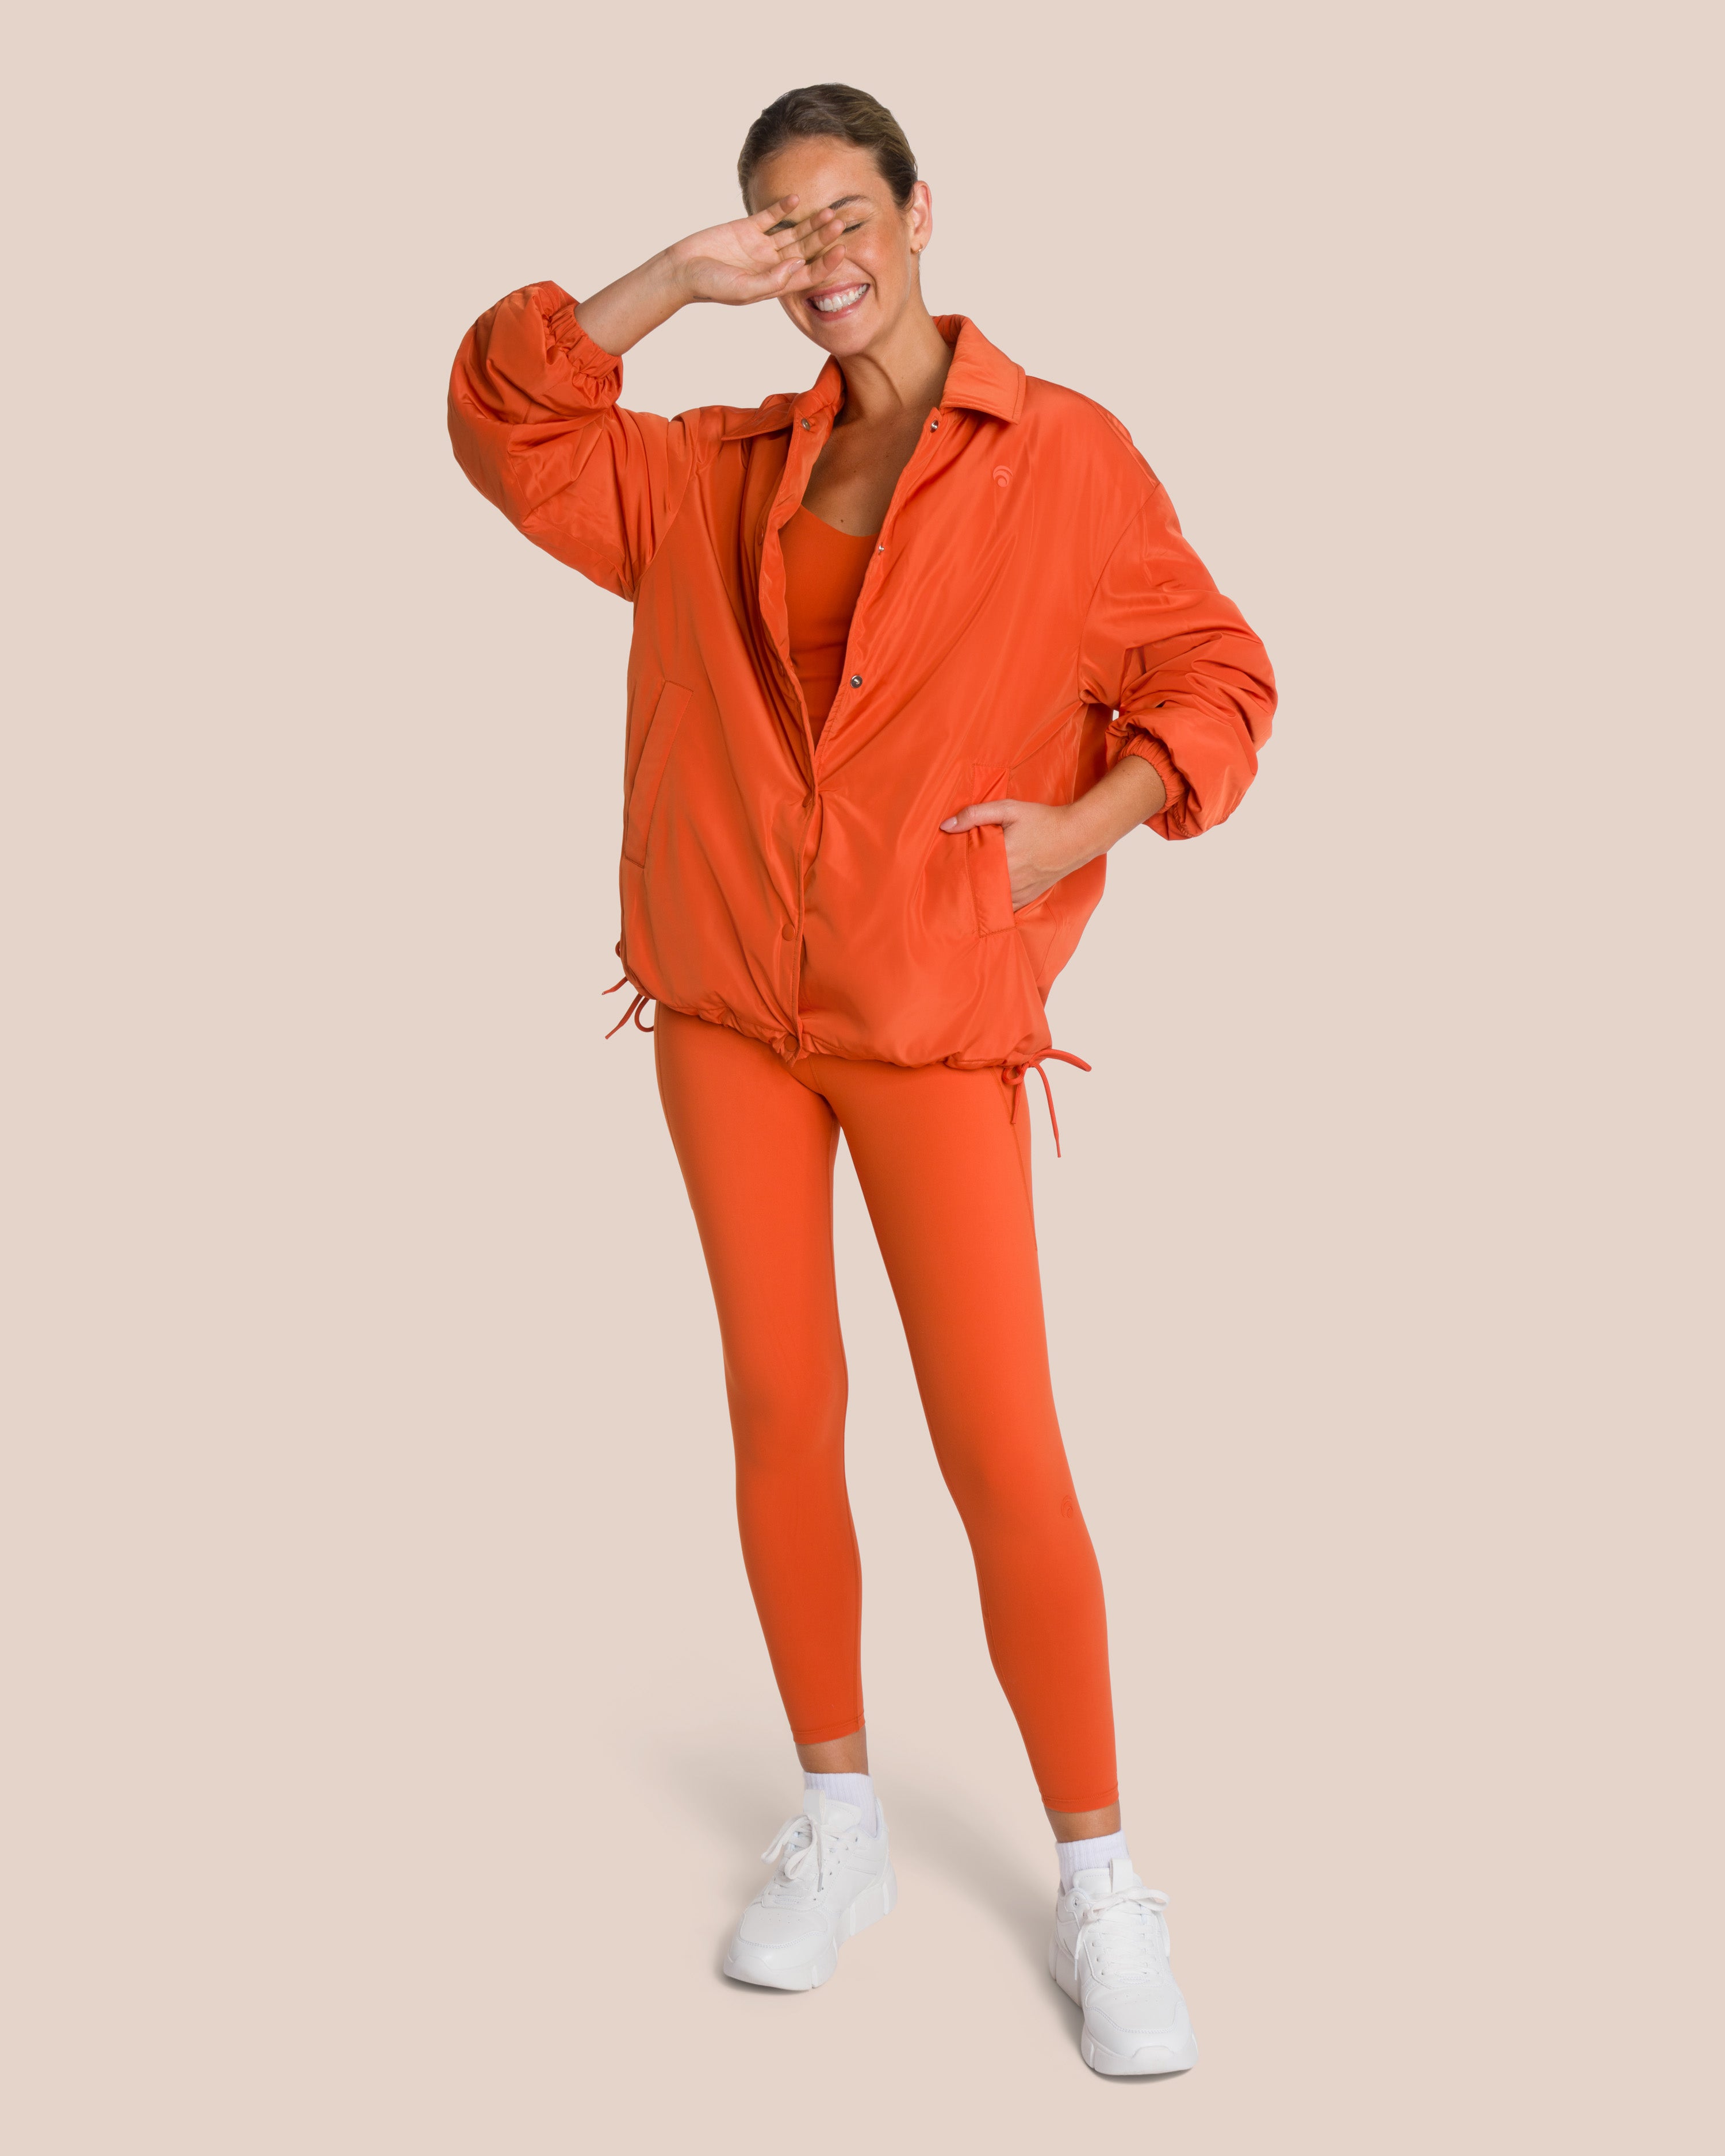 Shania Top Set Deluxe - Burnt Orange